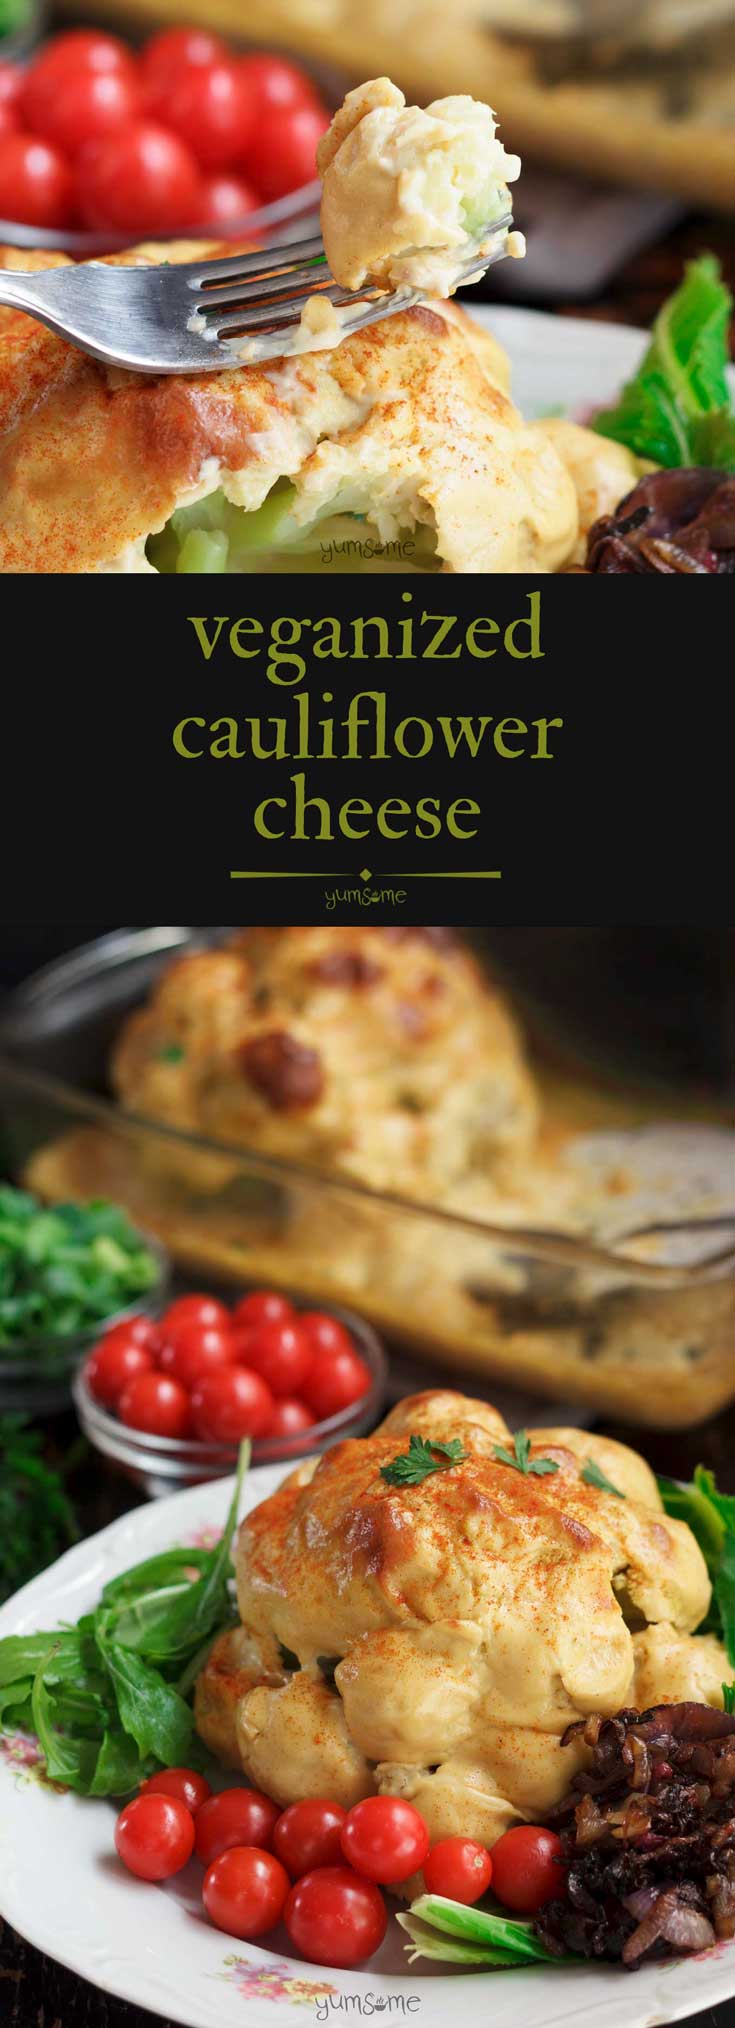 Vegan Cauliflower Cheese